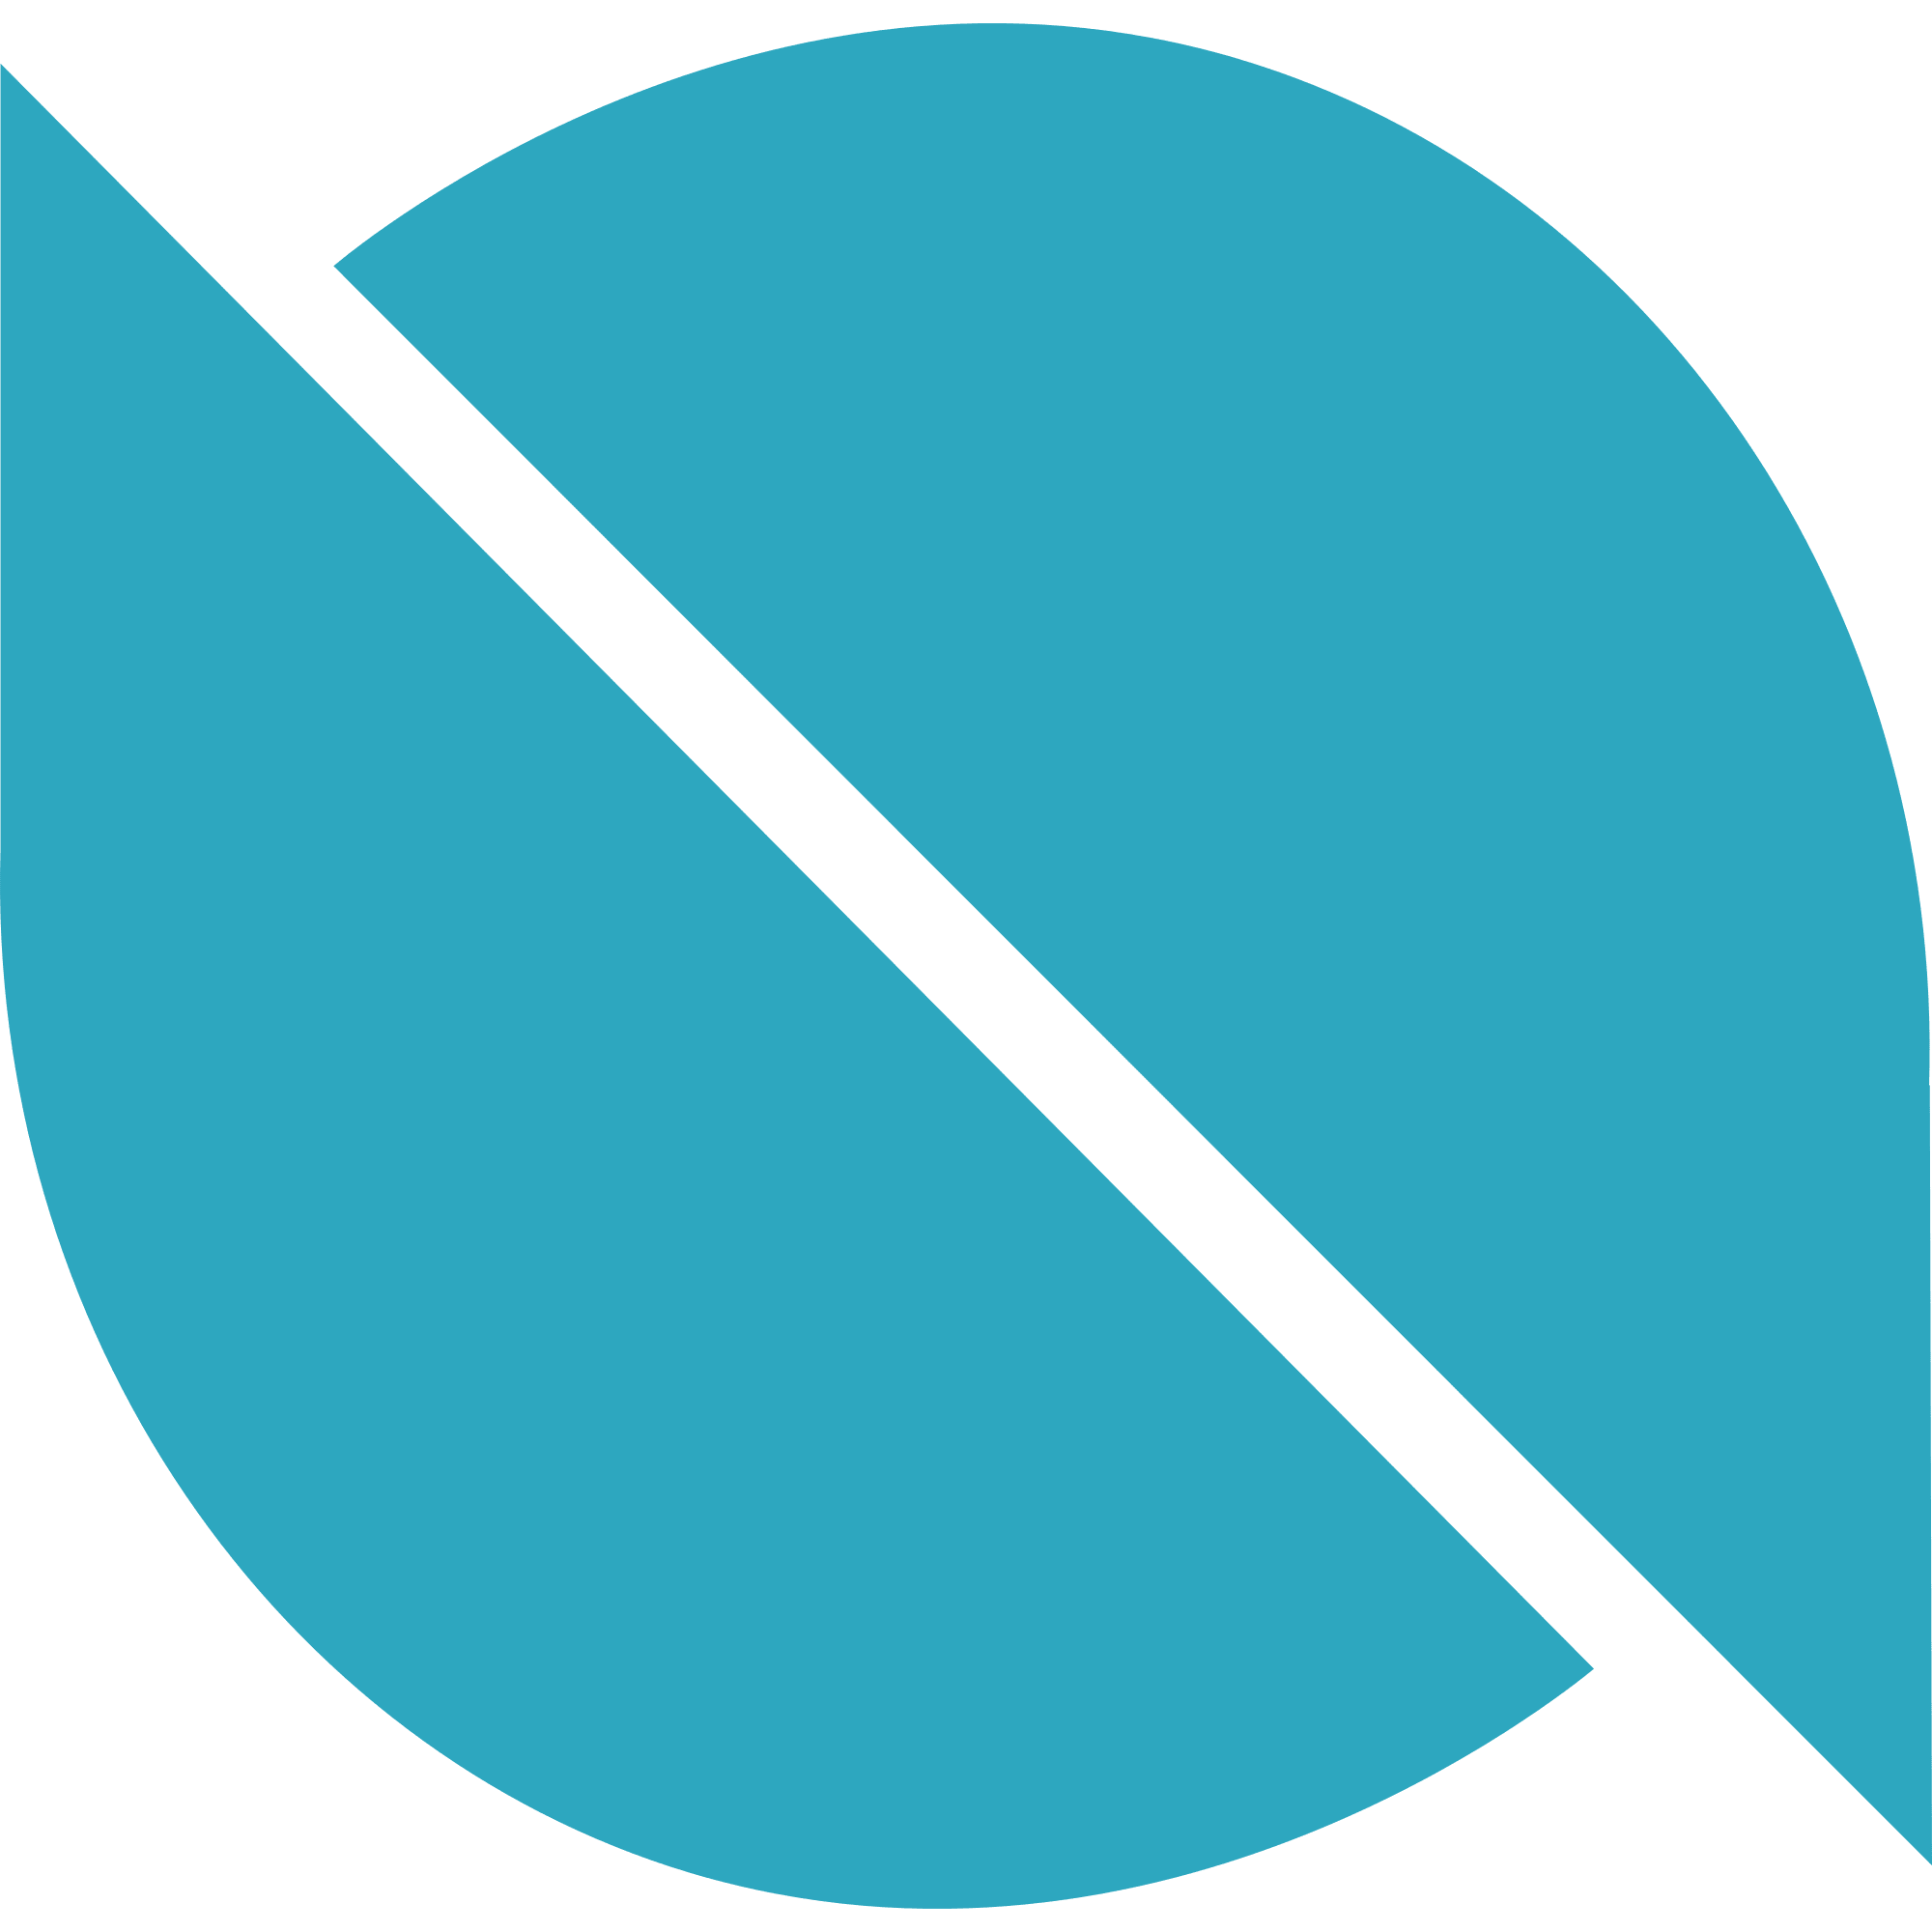 Ontology logo in png format